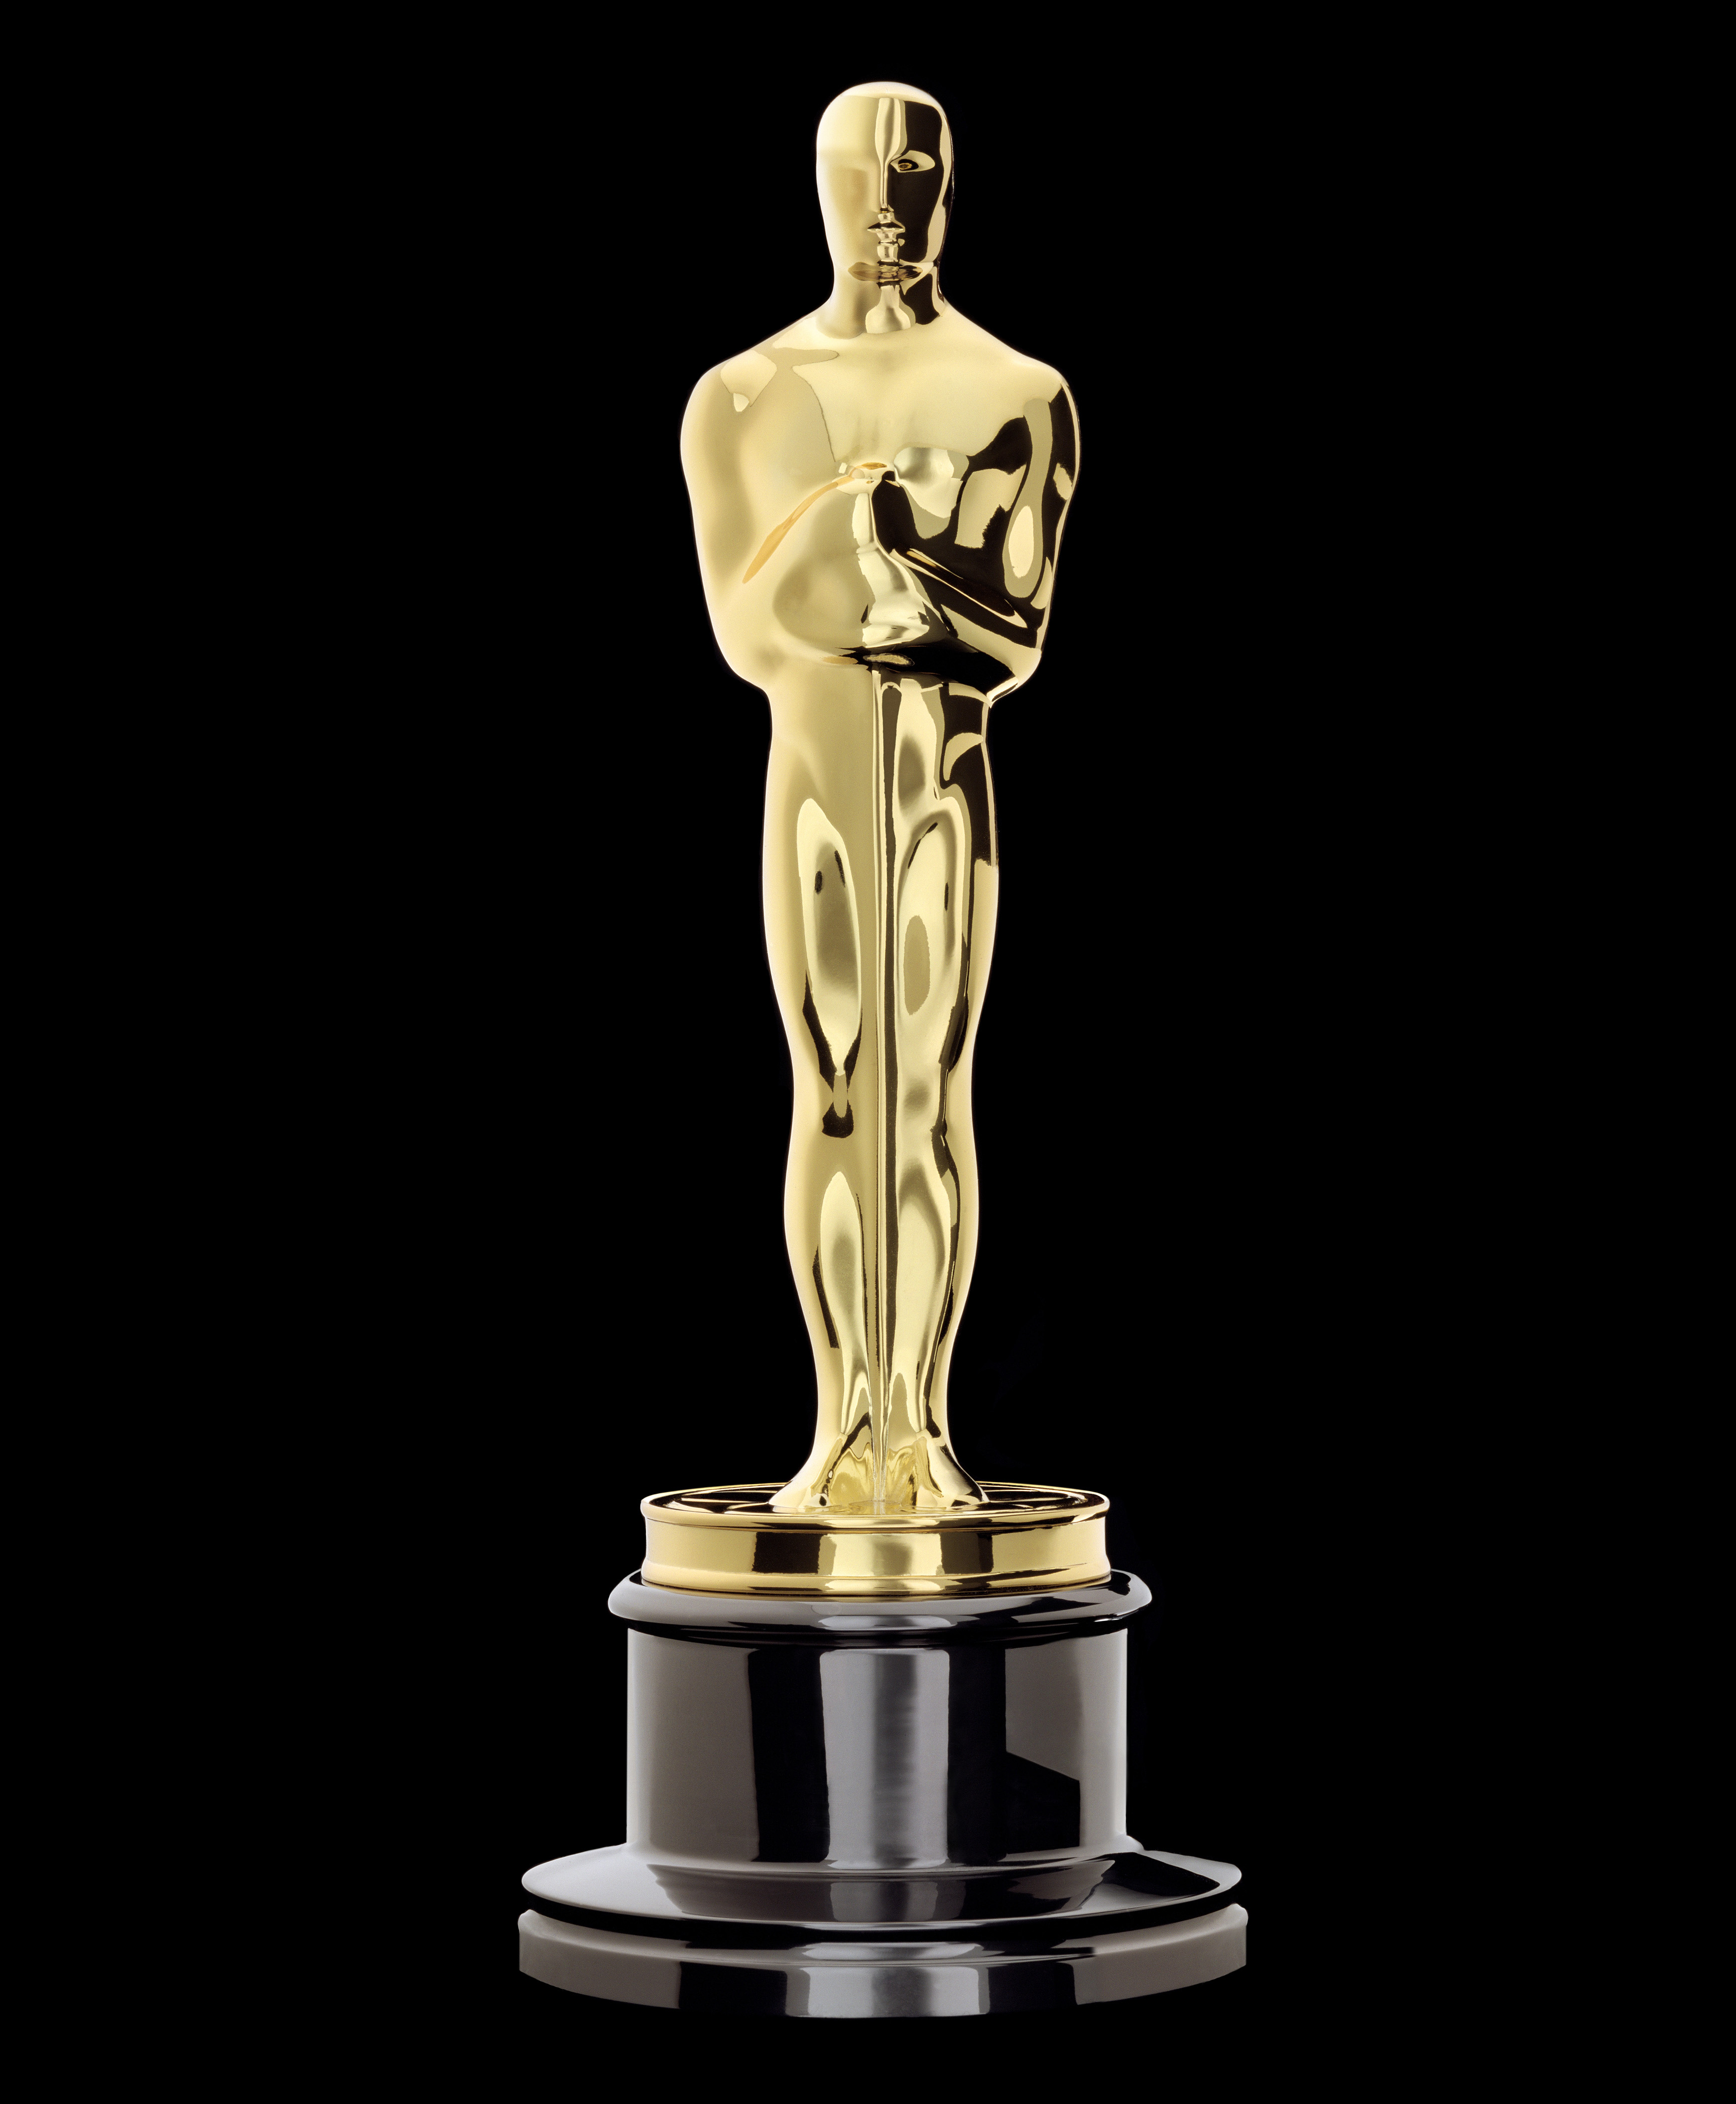 Oscar statue clipart